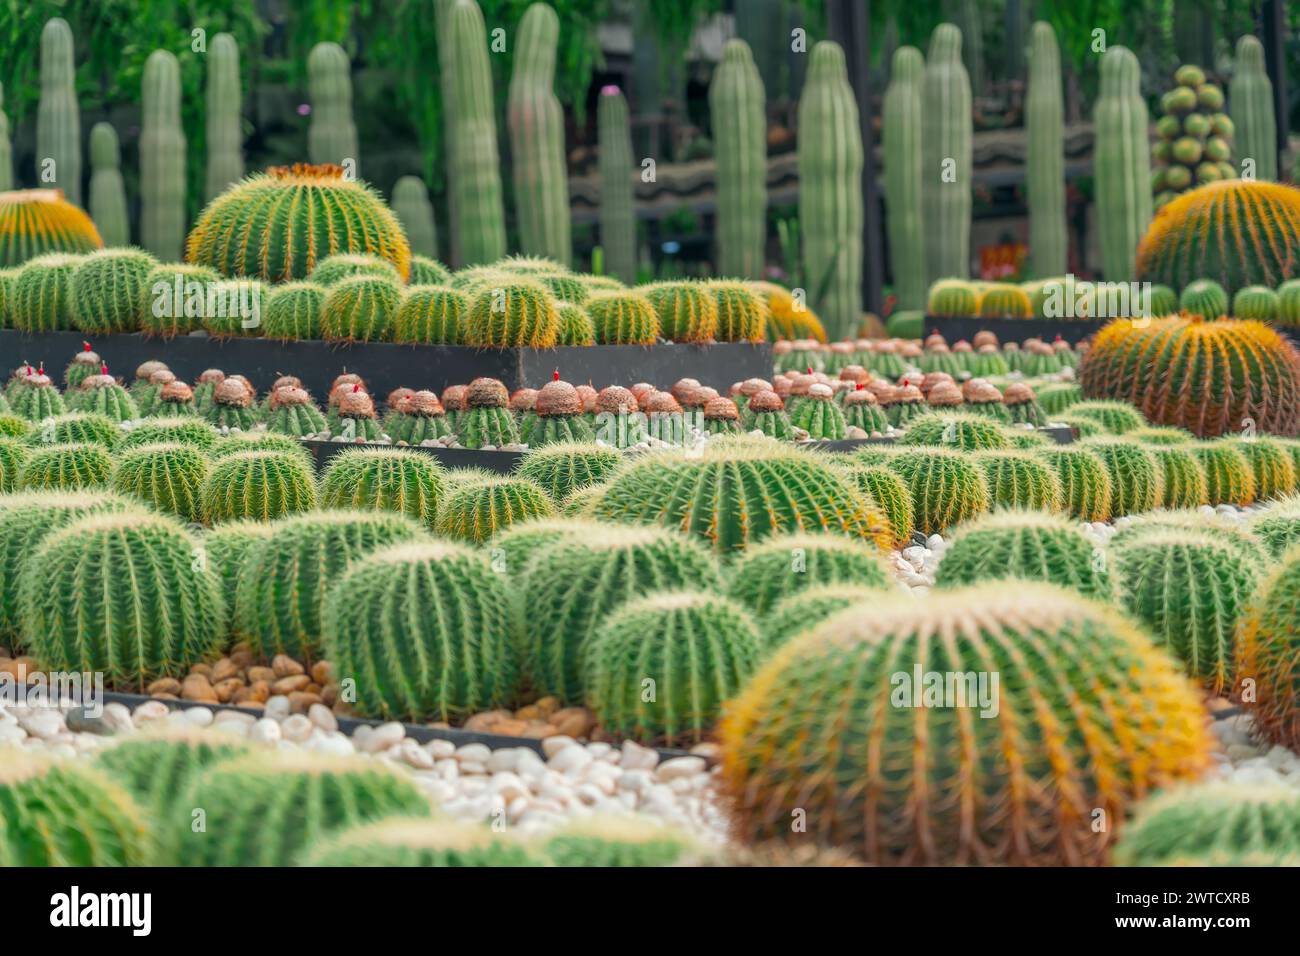 Grande varietà di cactus echinocactus grusonii, Melocactus, in un clima arido da giardino. Foto Stock